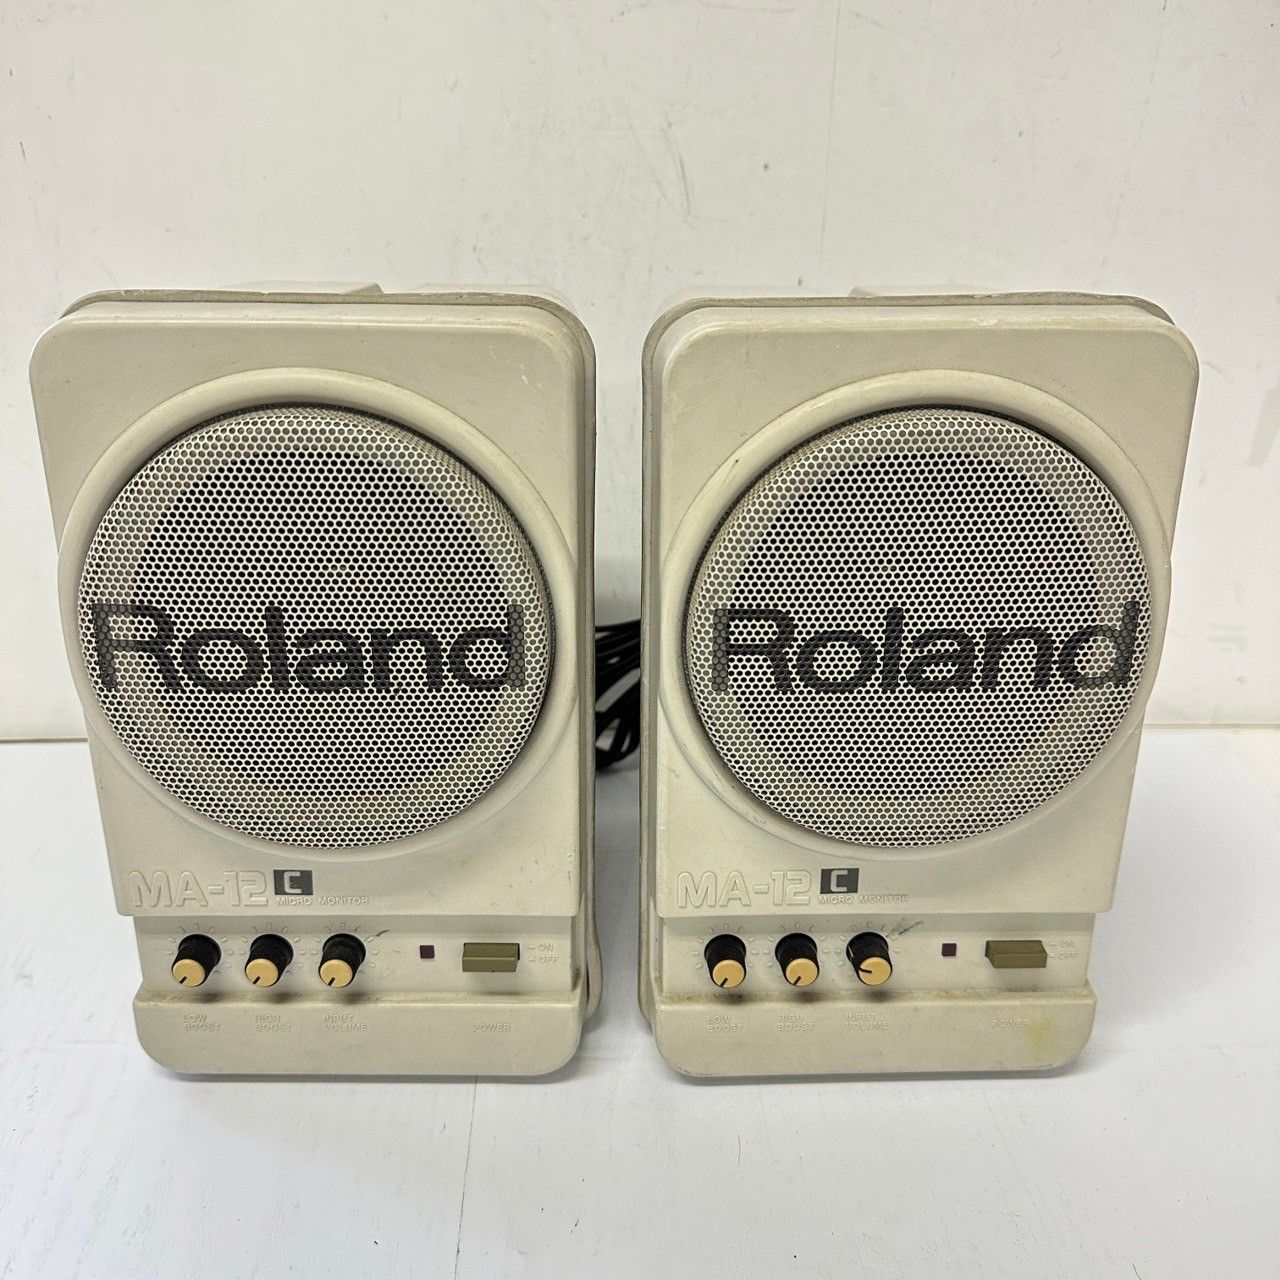 ローランド Roland MA-12C アンプ スピーカー ペアよろしくお願いします